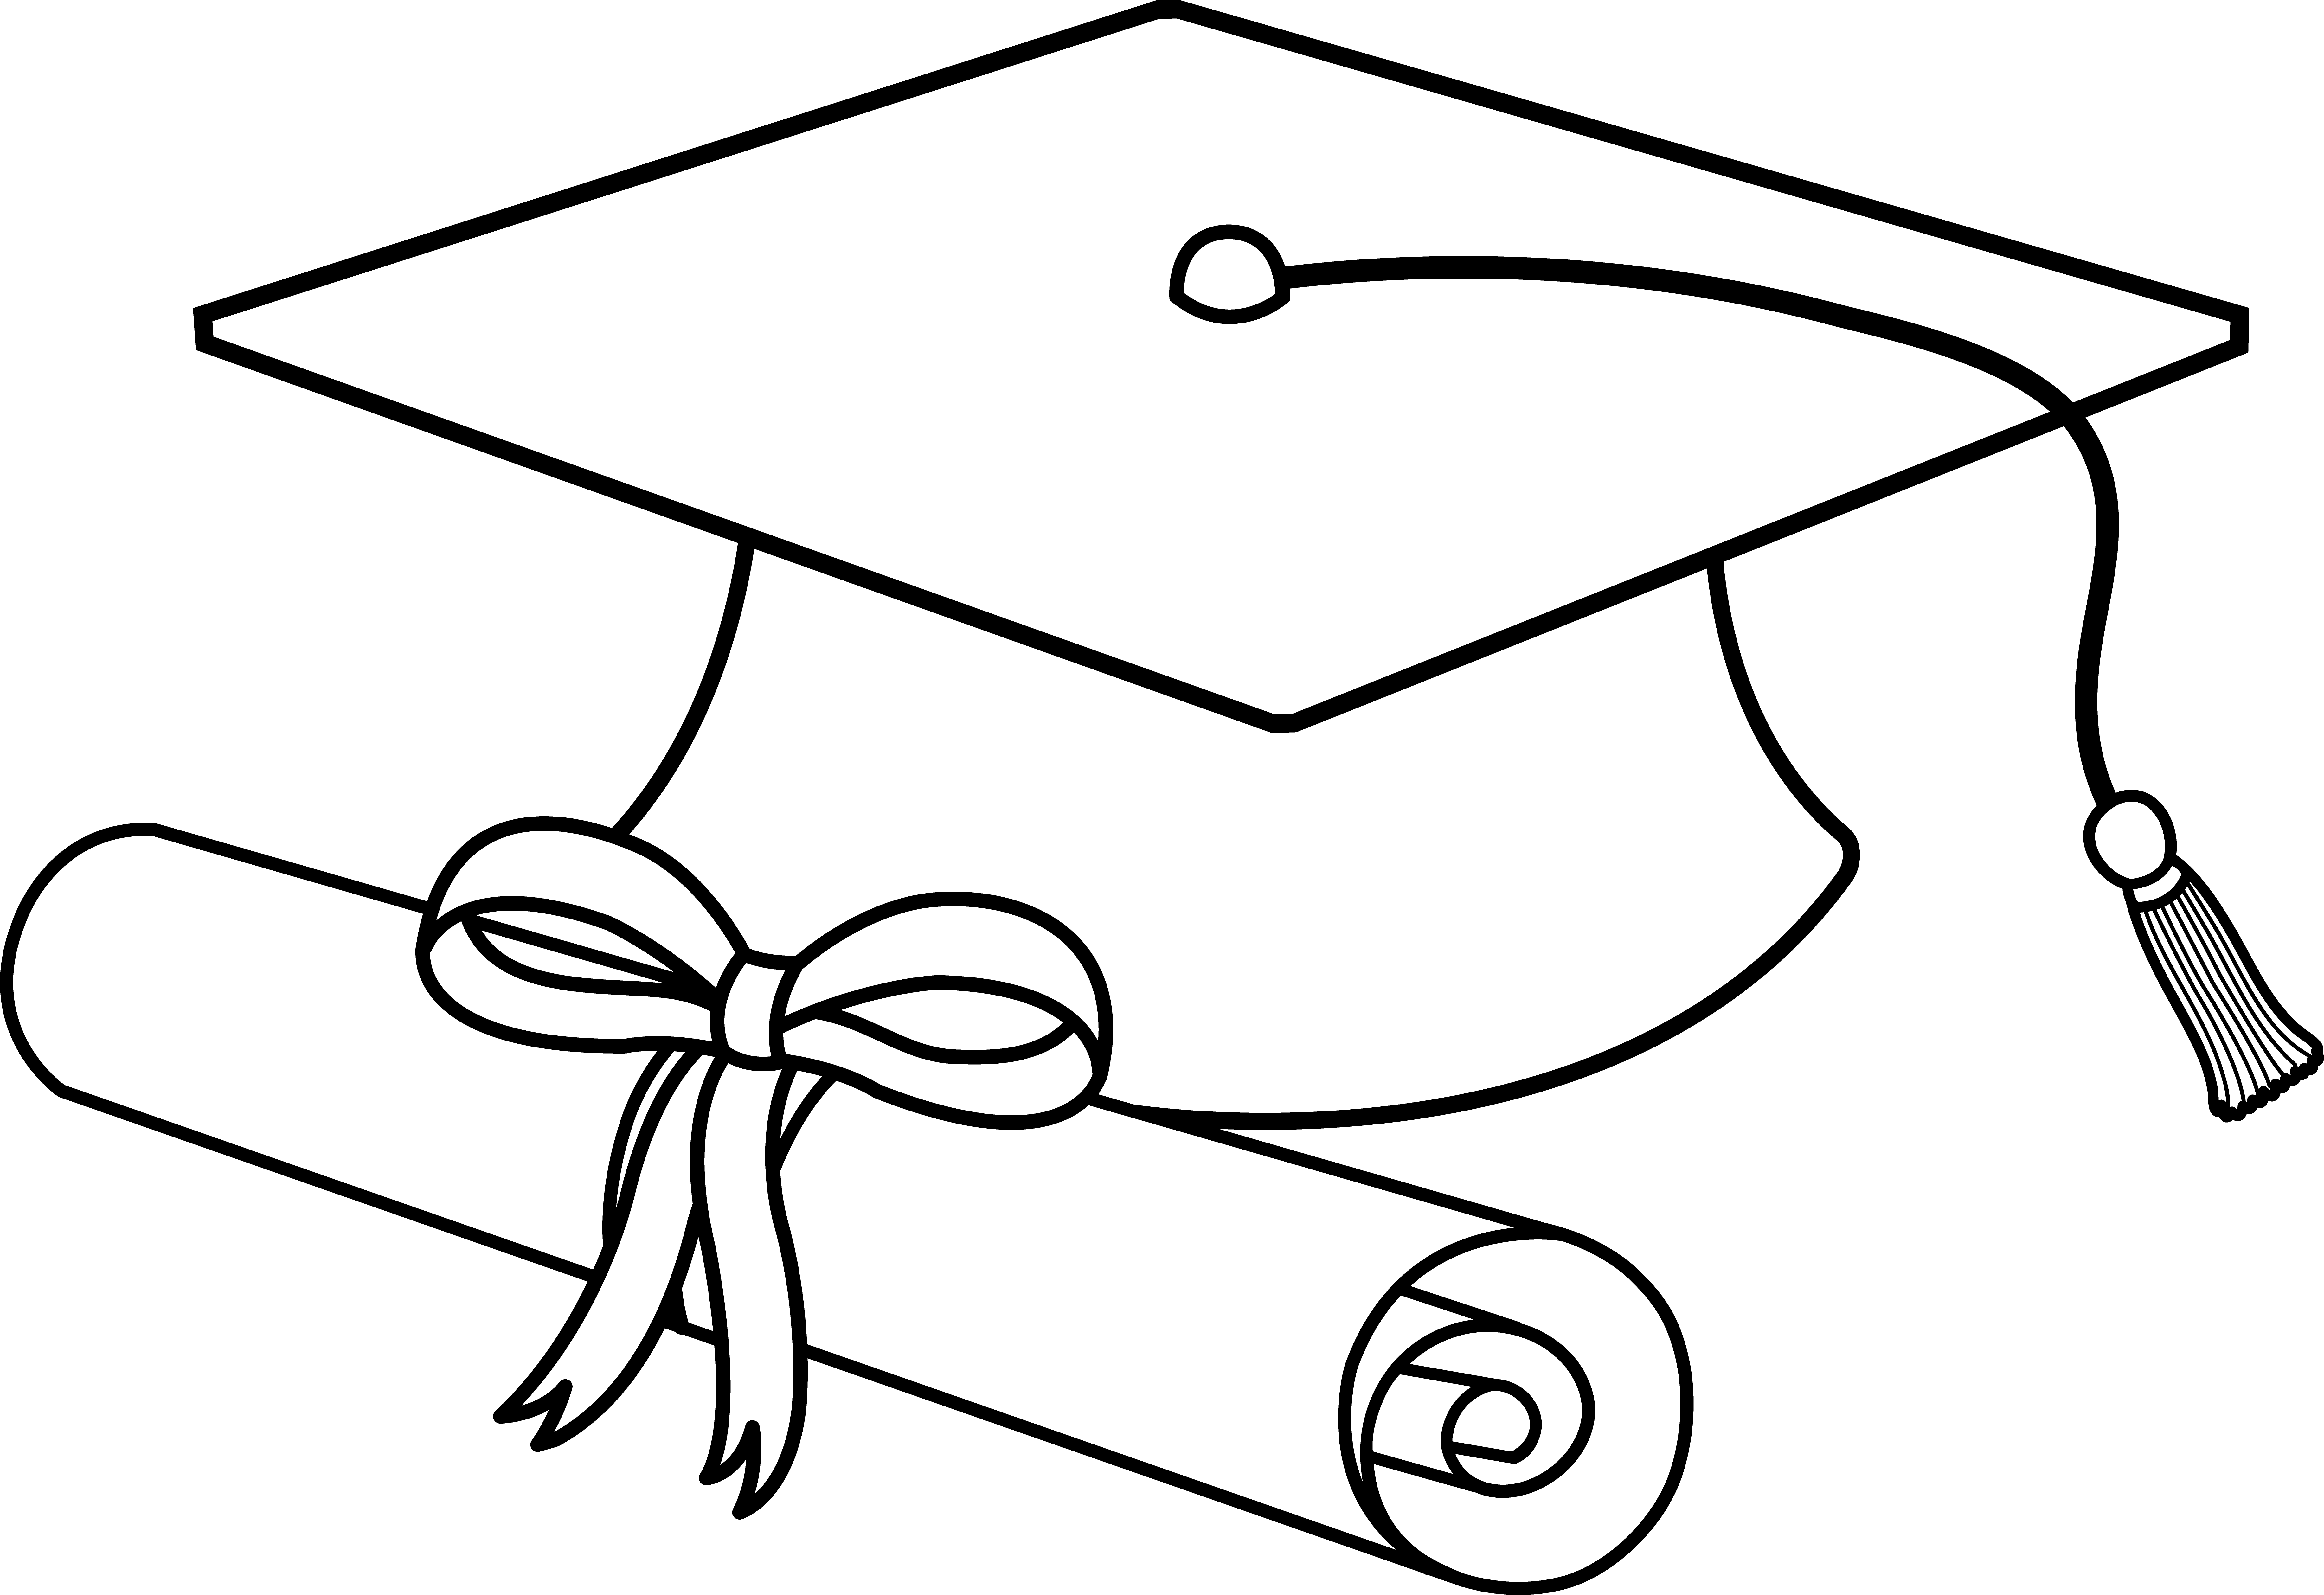 Graduation Cap Cartoon Images & Pictures - Becuo